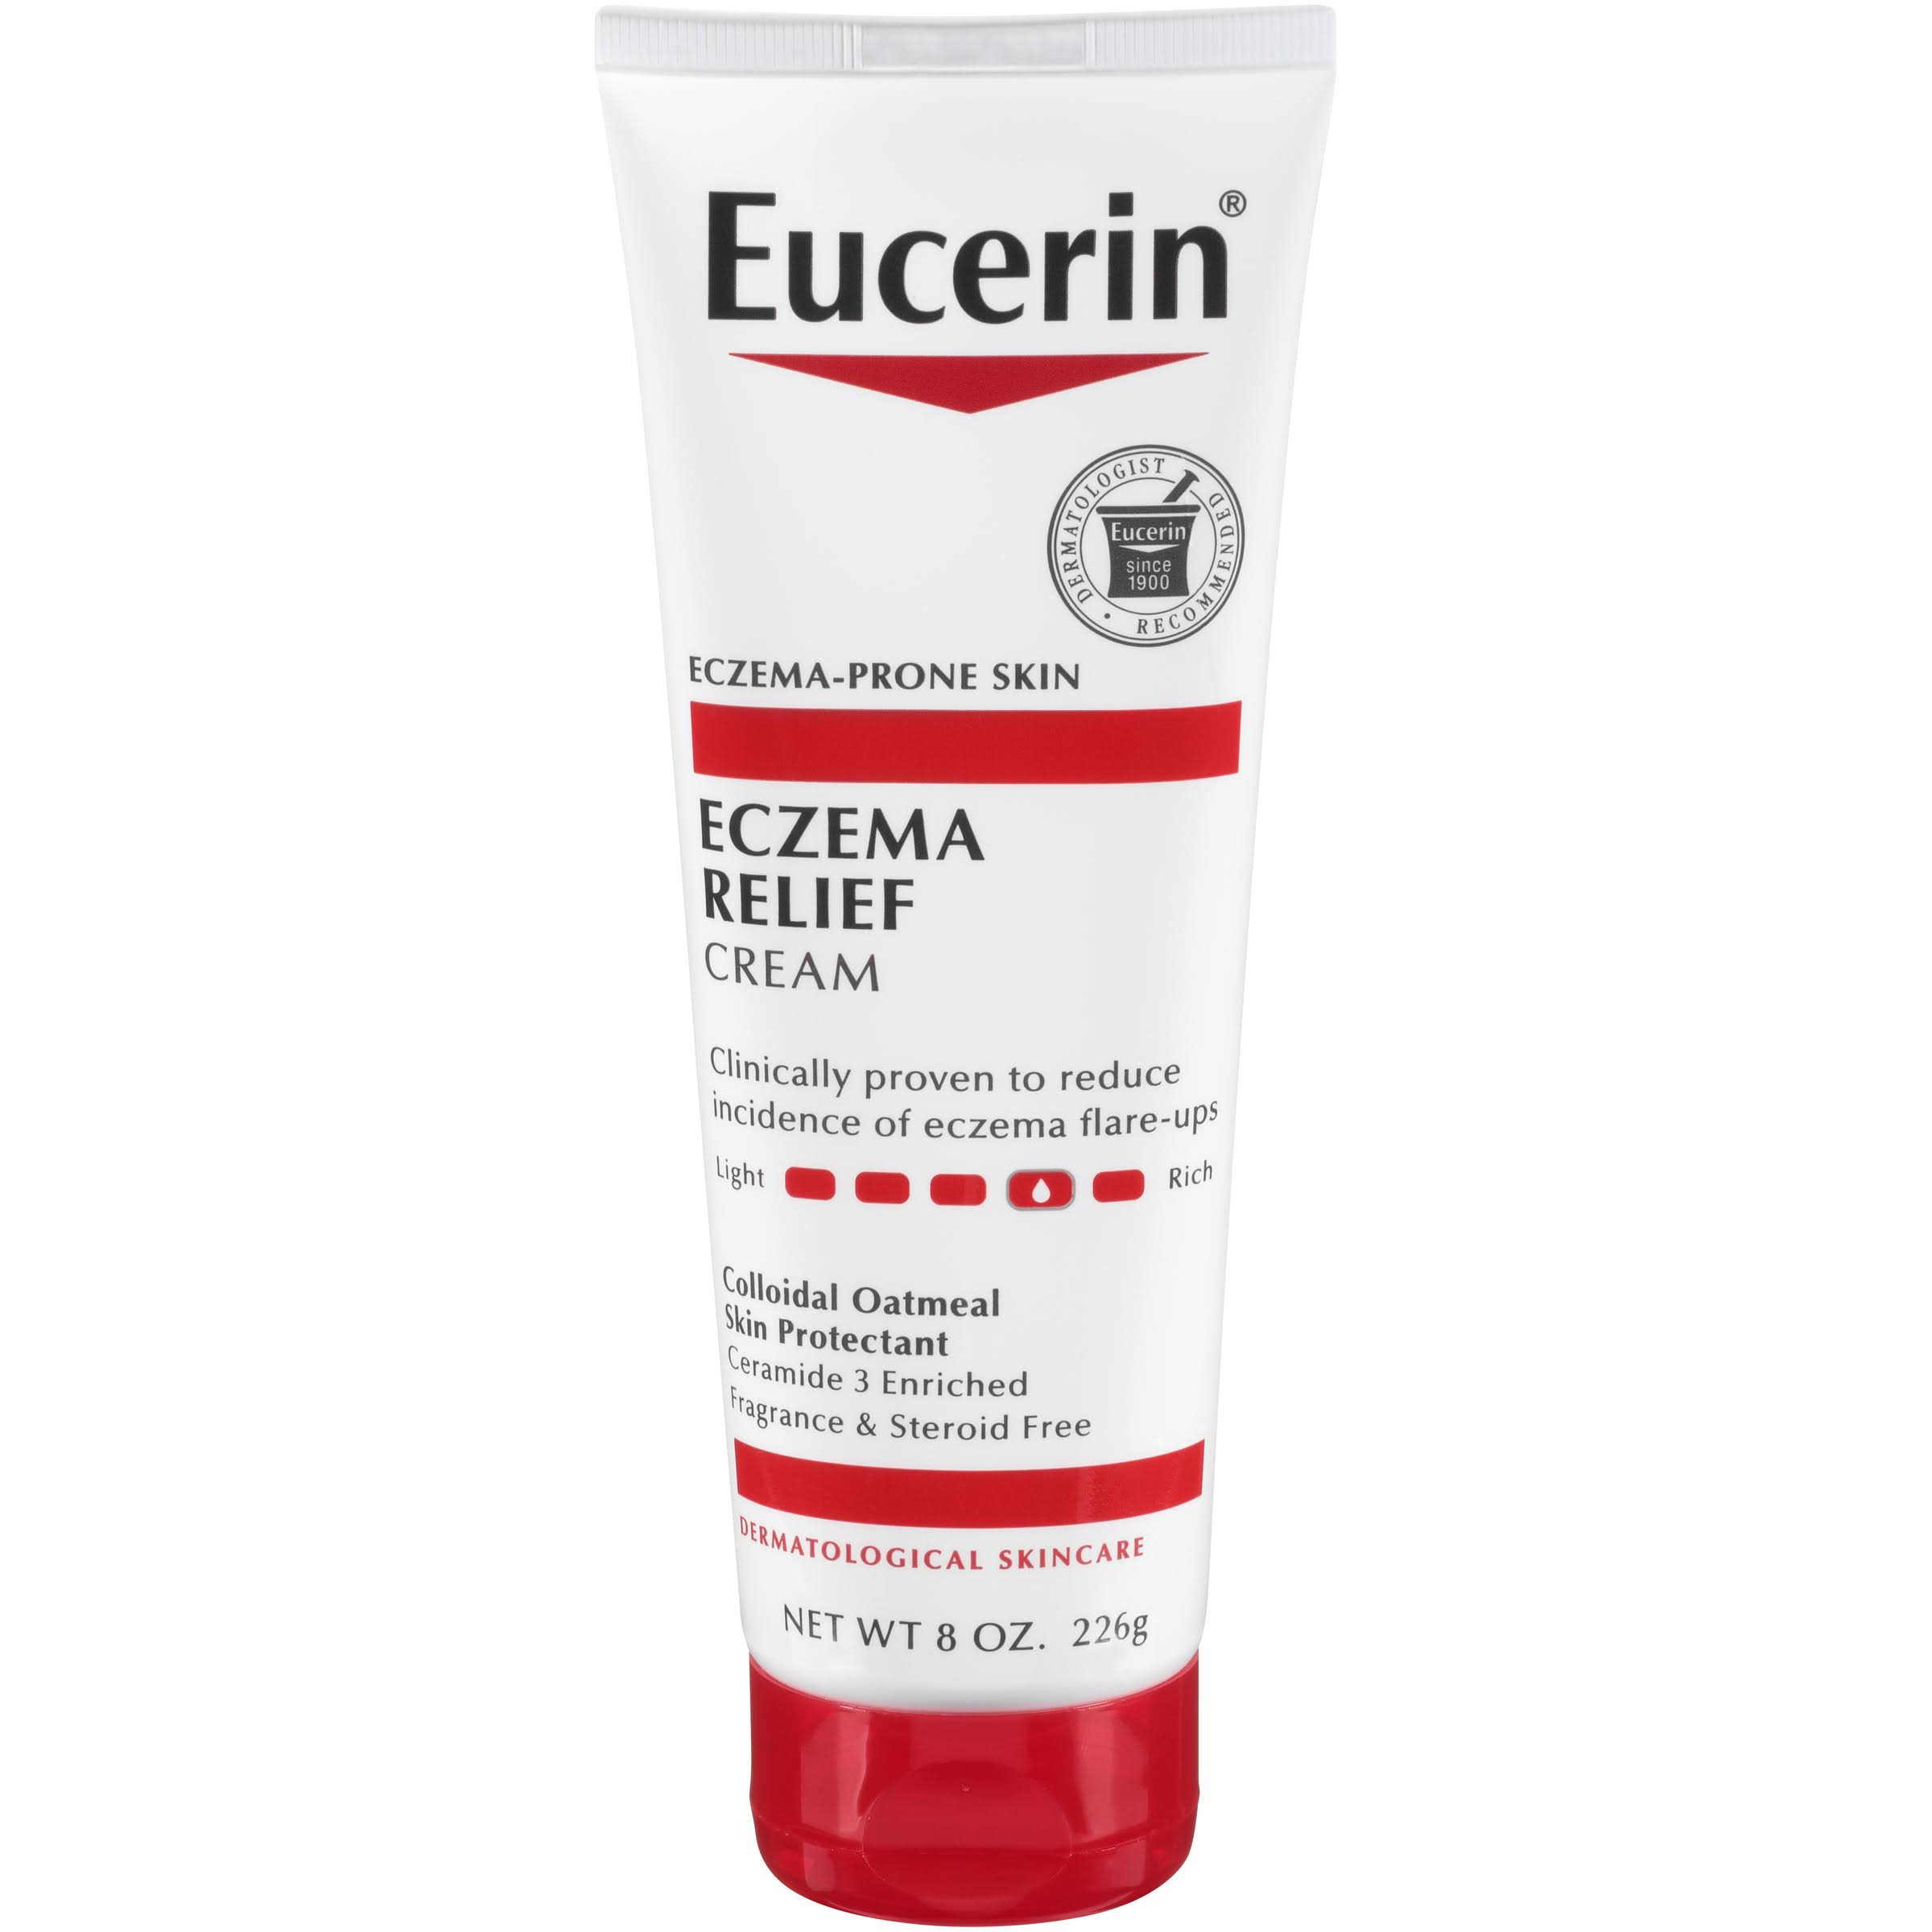 Eucerin Eczema Relief Body Creme - 8 oz